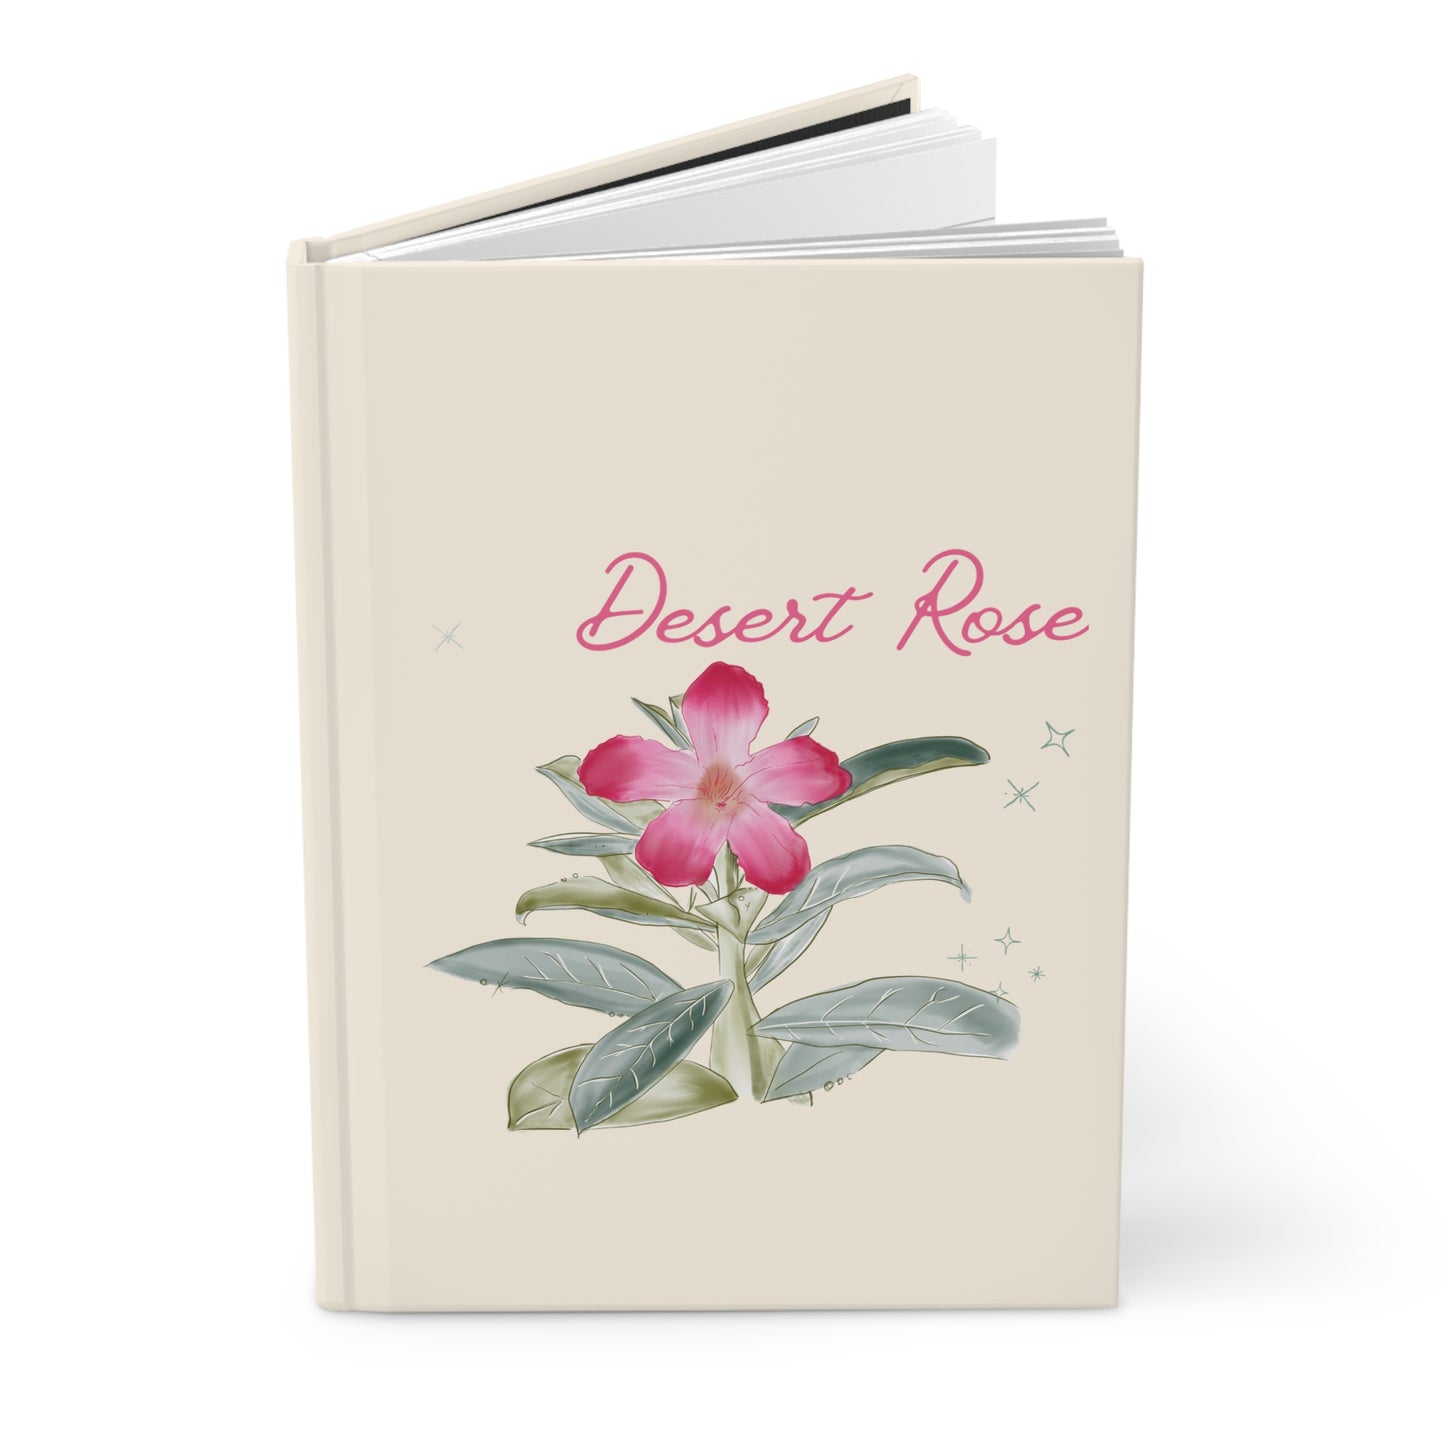 Desert Rose Botanical Illustration Journal